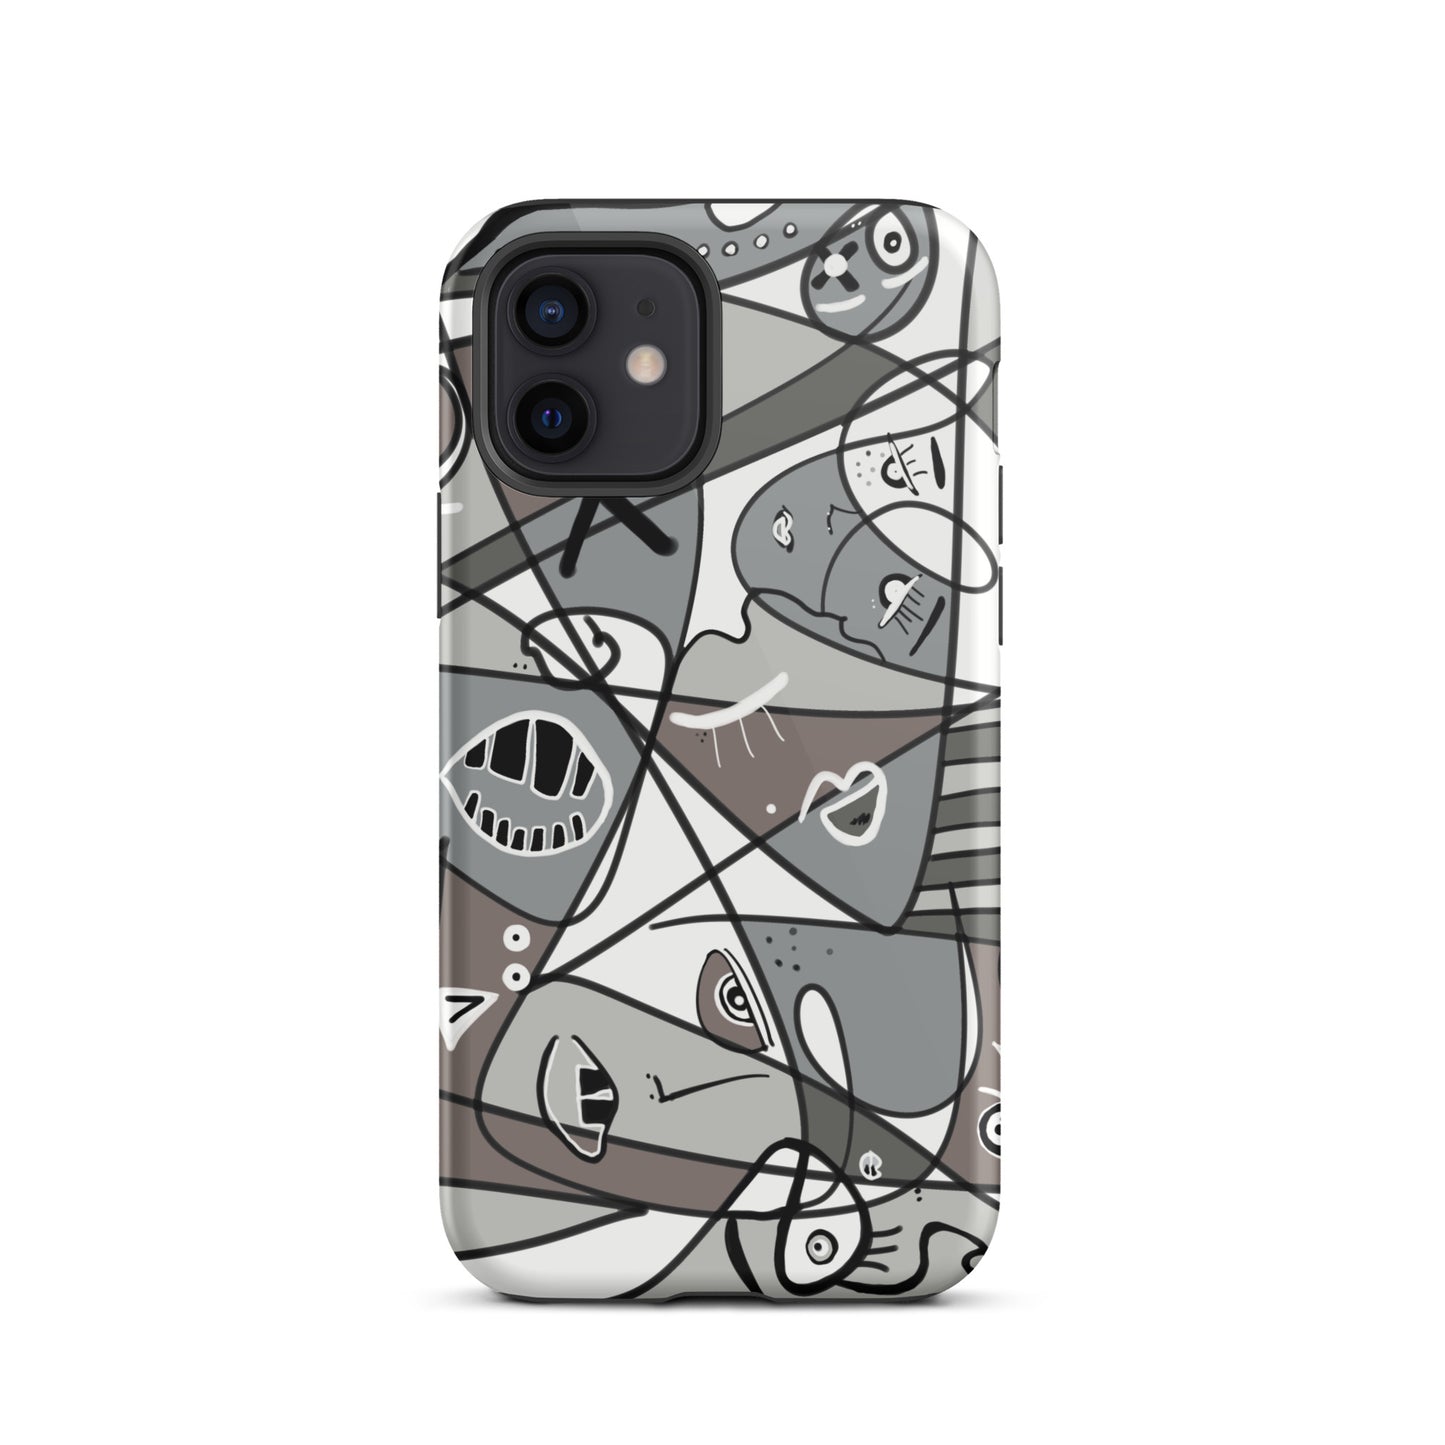 BW stylish iPhone case